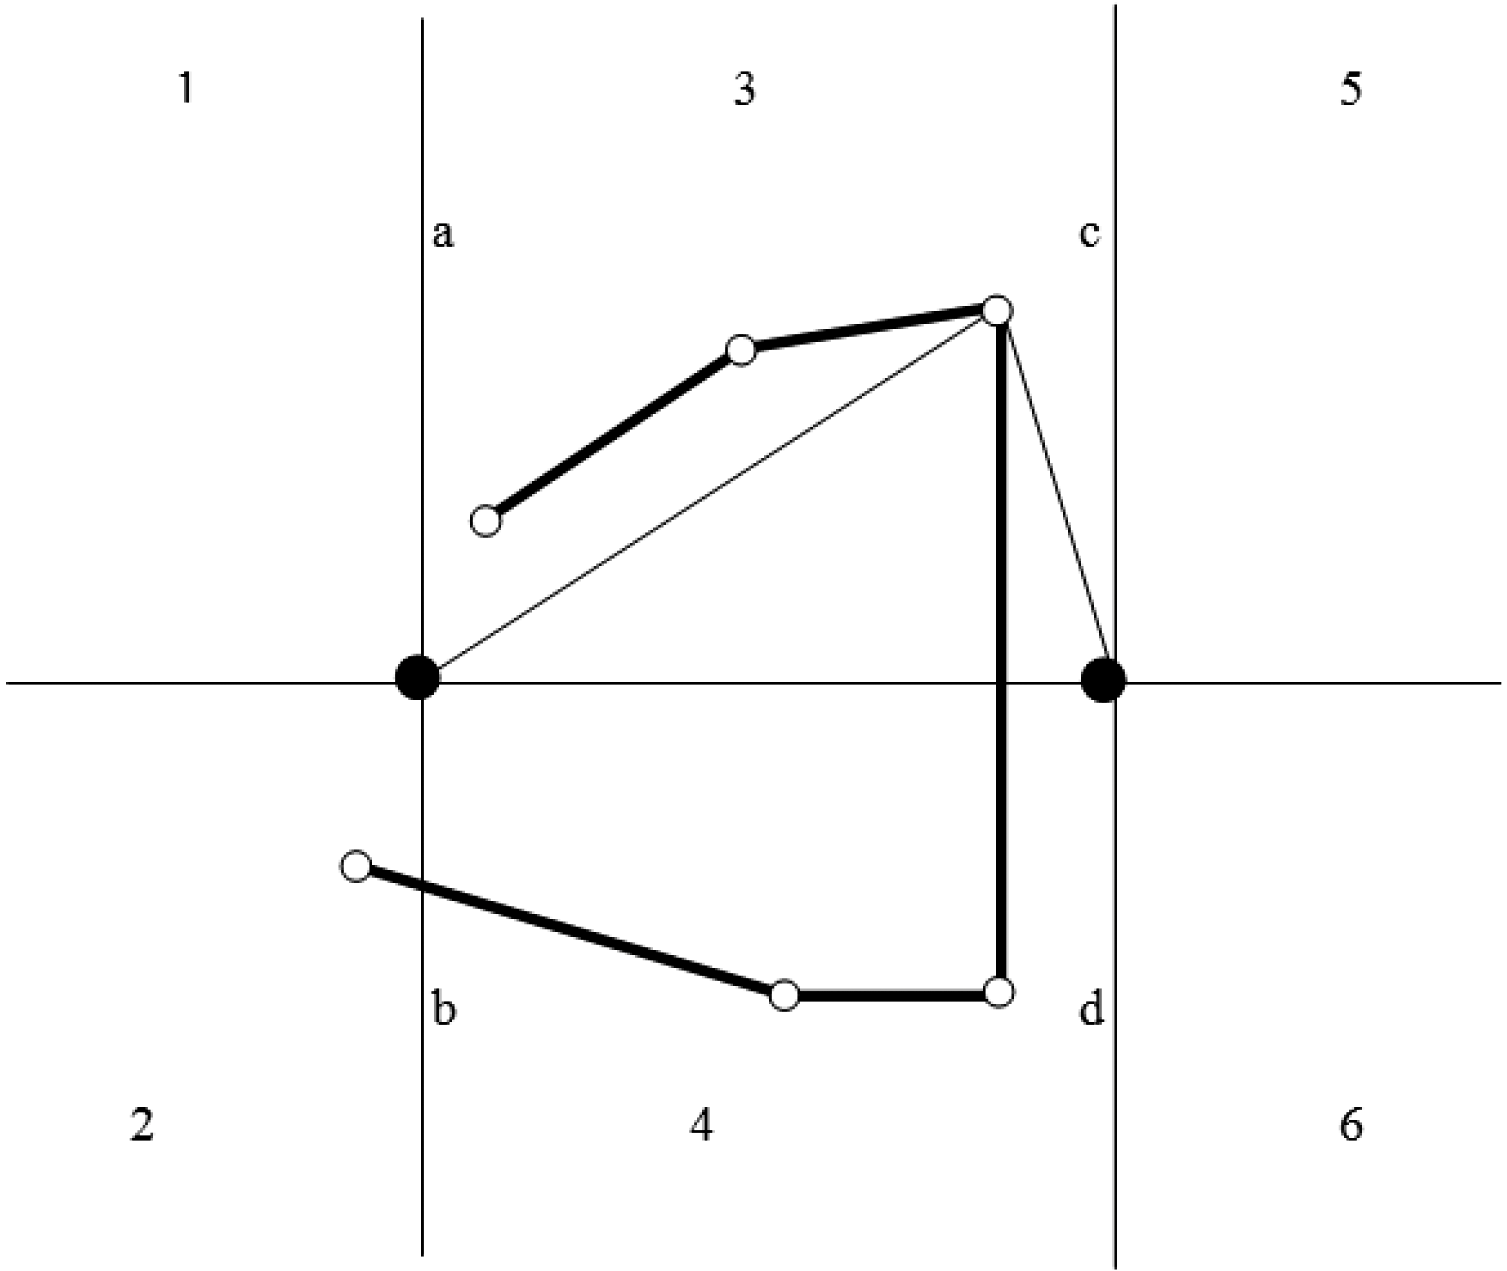 Figuur 4.11: Meervoudig scherm met zes hoekpunten. De linker omweg is aangegeven. Er is geen rechter omweg mogelijk in deze situatie.